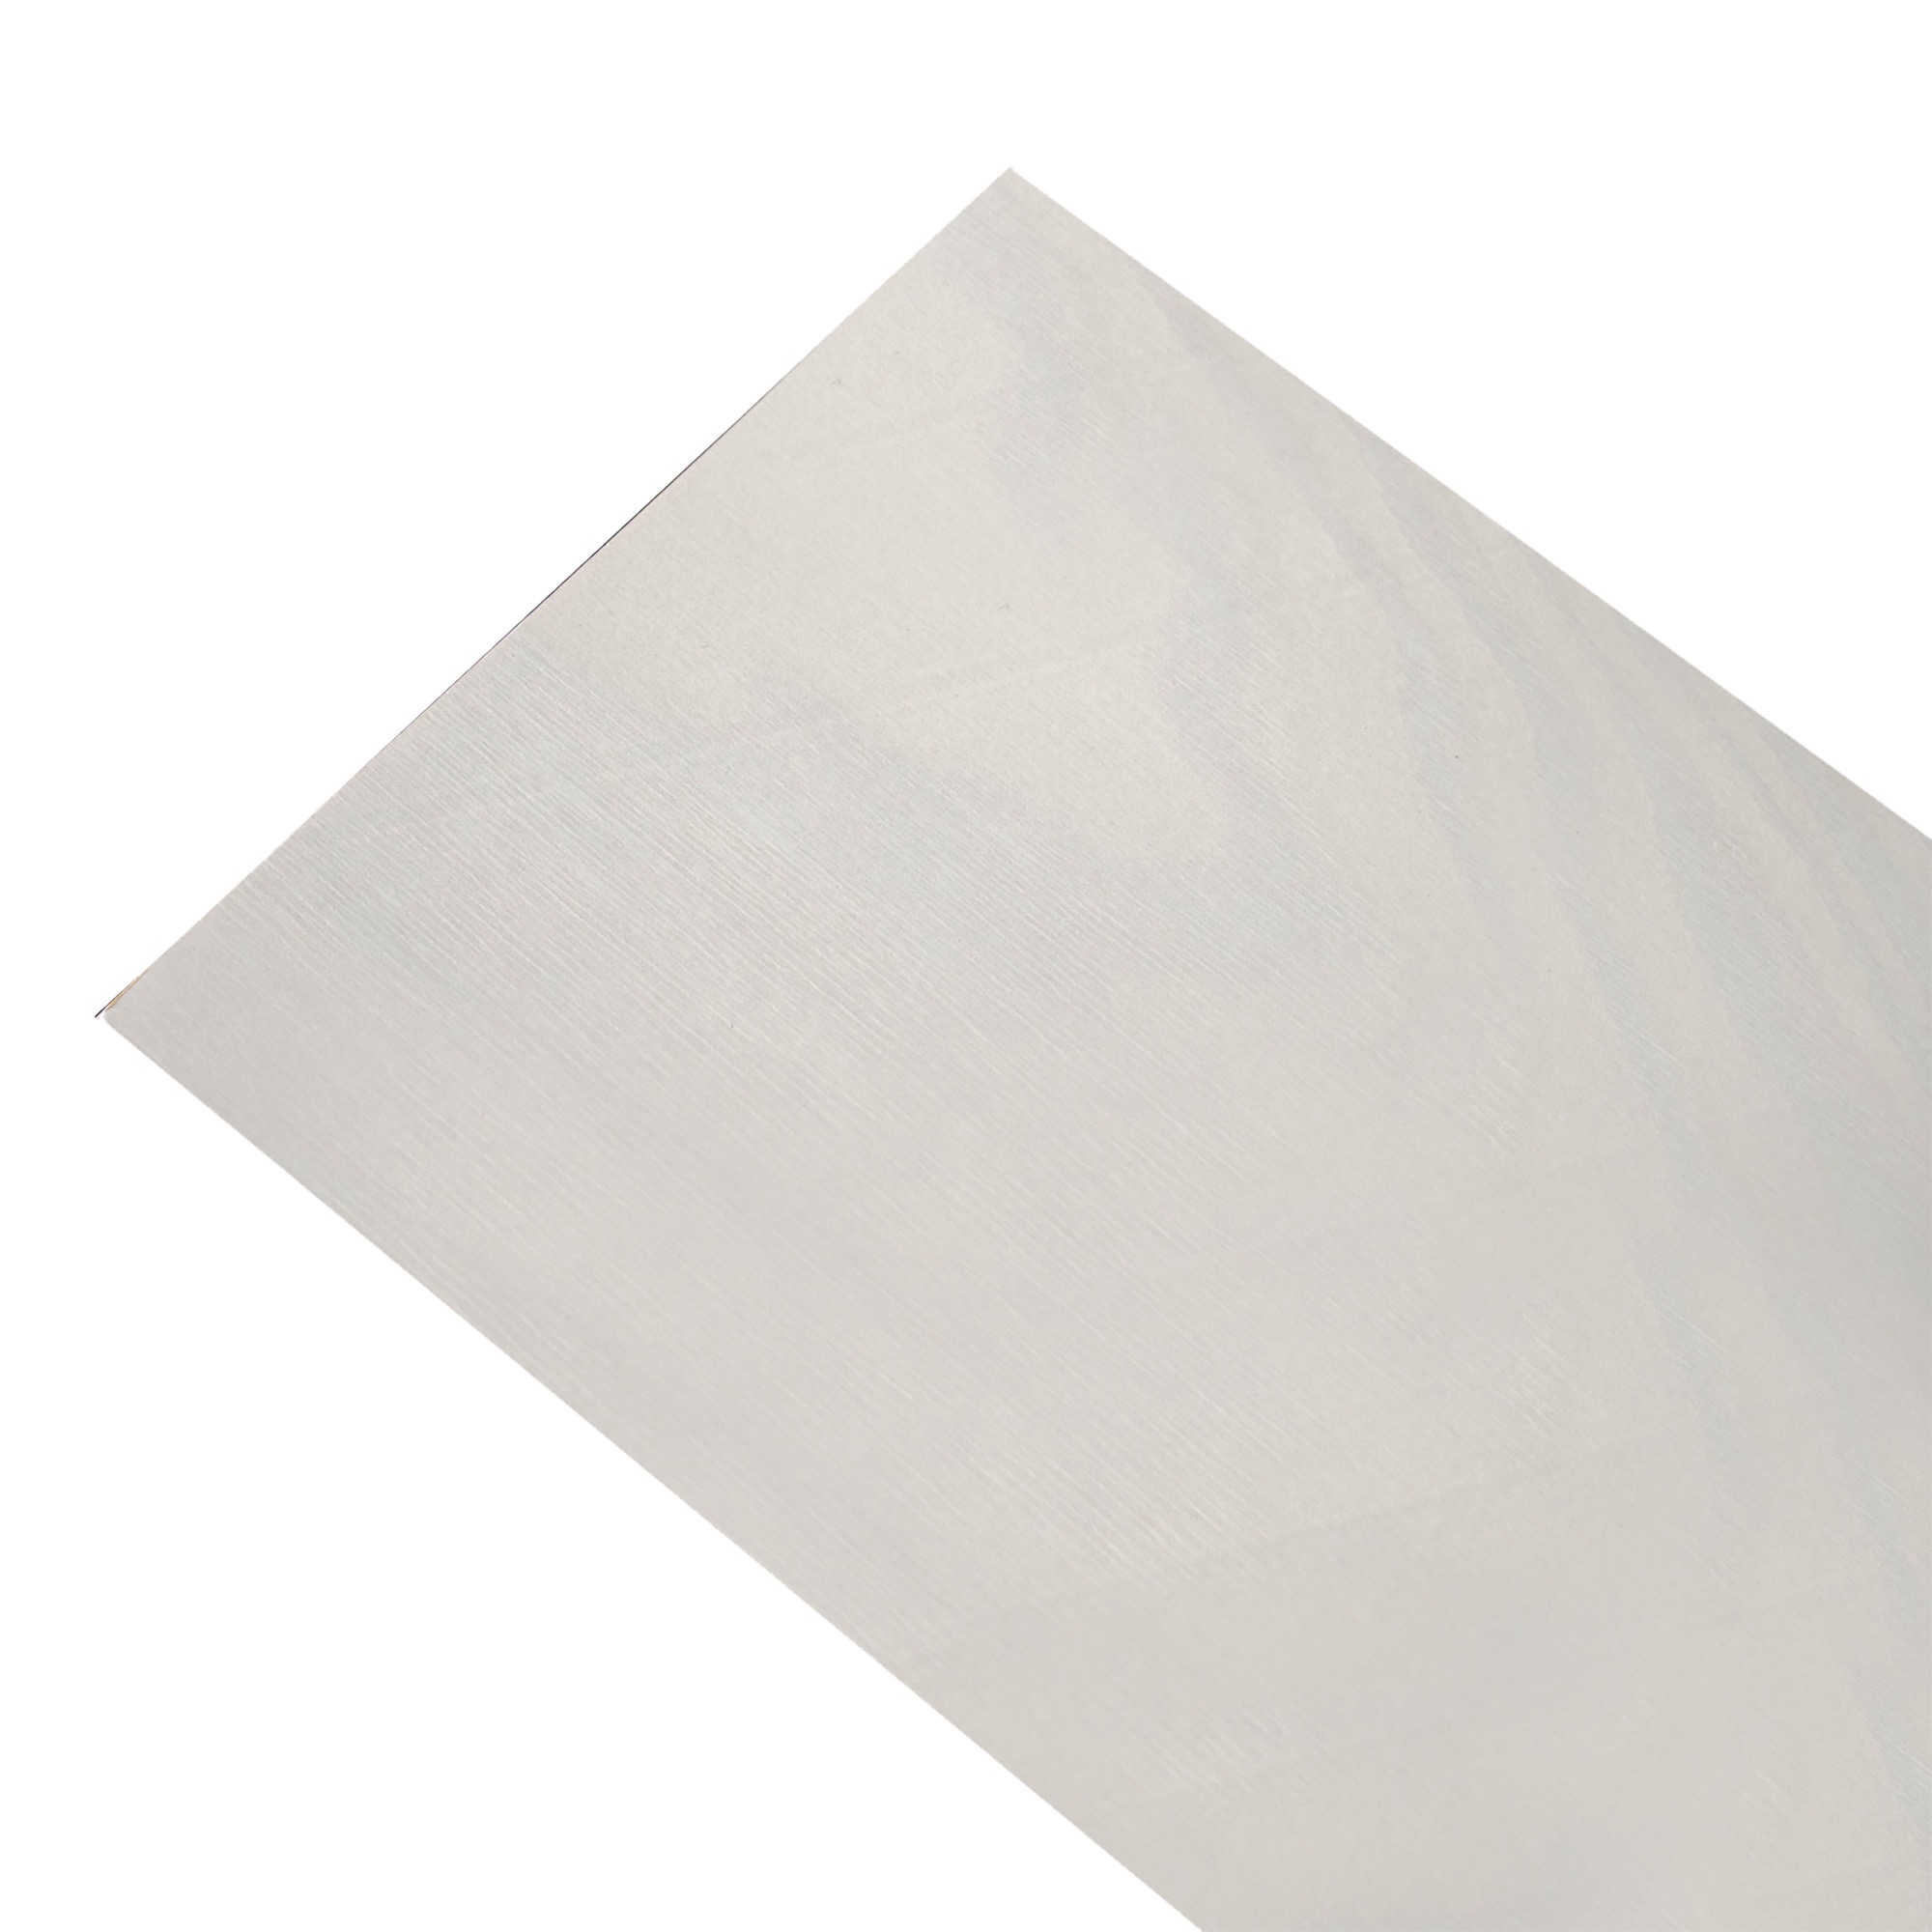 ラーチ合板パネル 白マット WL-WB009-03-G049 白いマットな仕上げですが、うっすらと木目が透けています